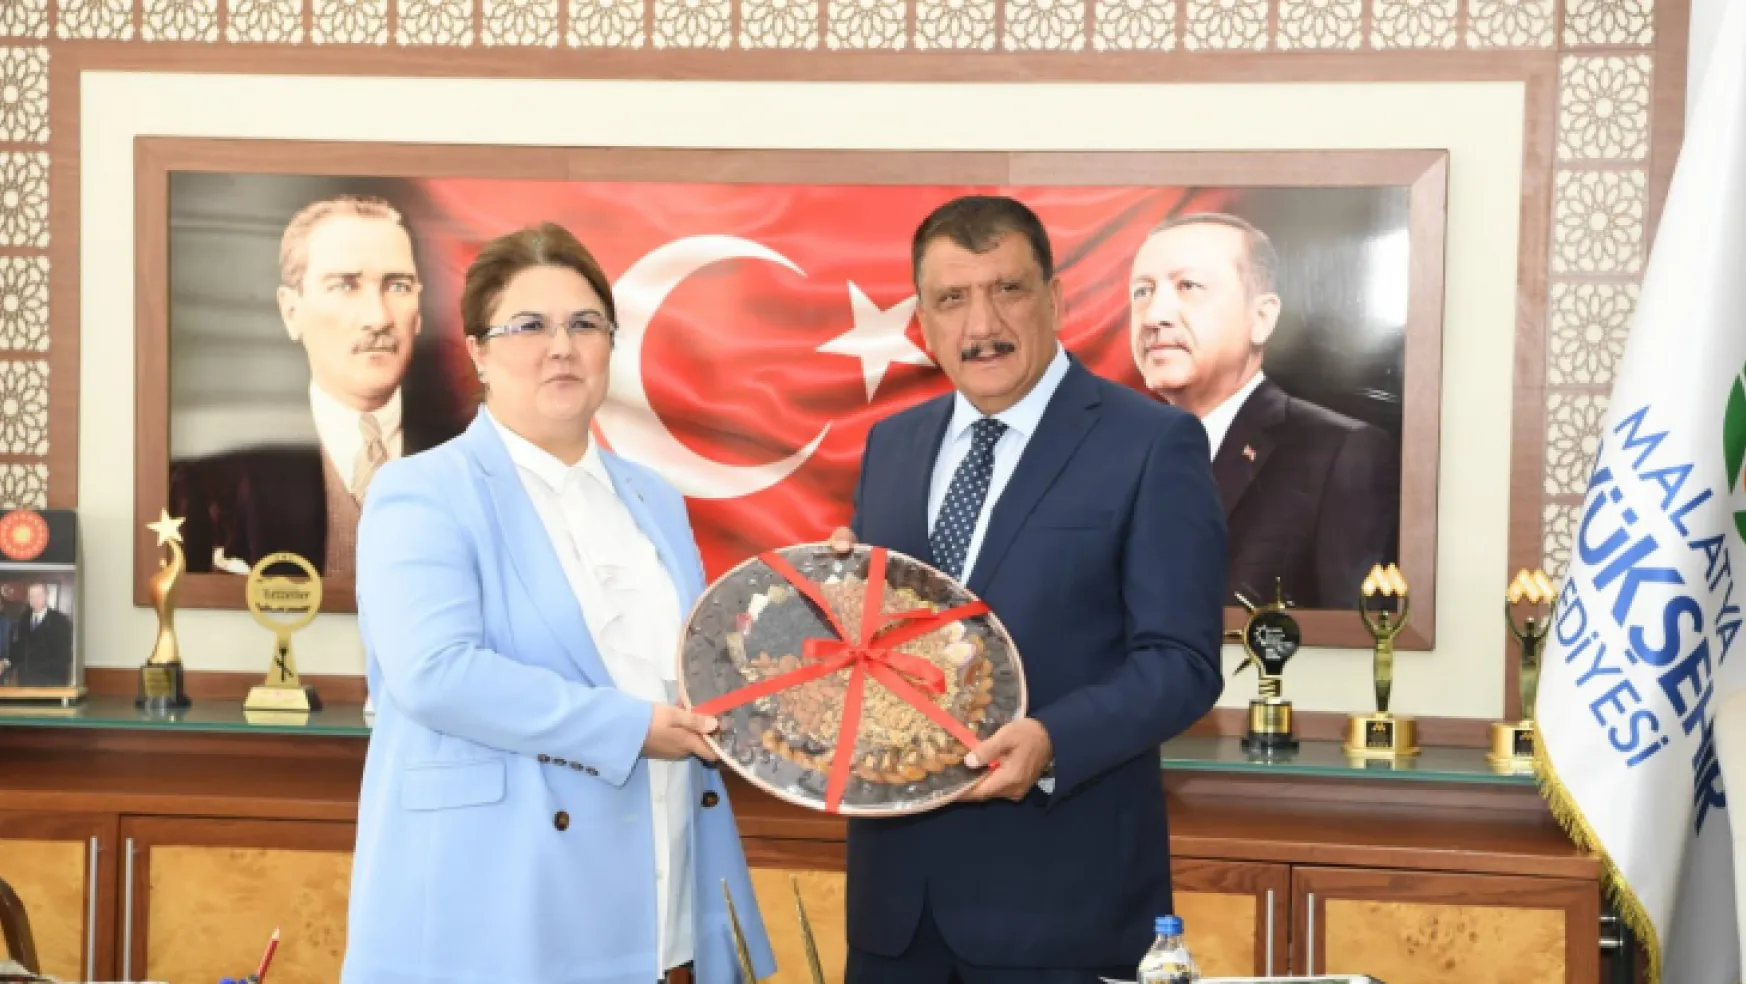 Aile ve Sosyal Hizmetler Bakanı Derya Yanık Başkan Gürkan'ı ziyaret etti